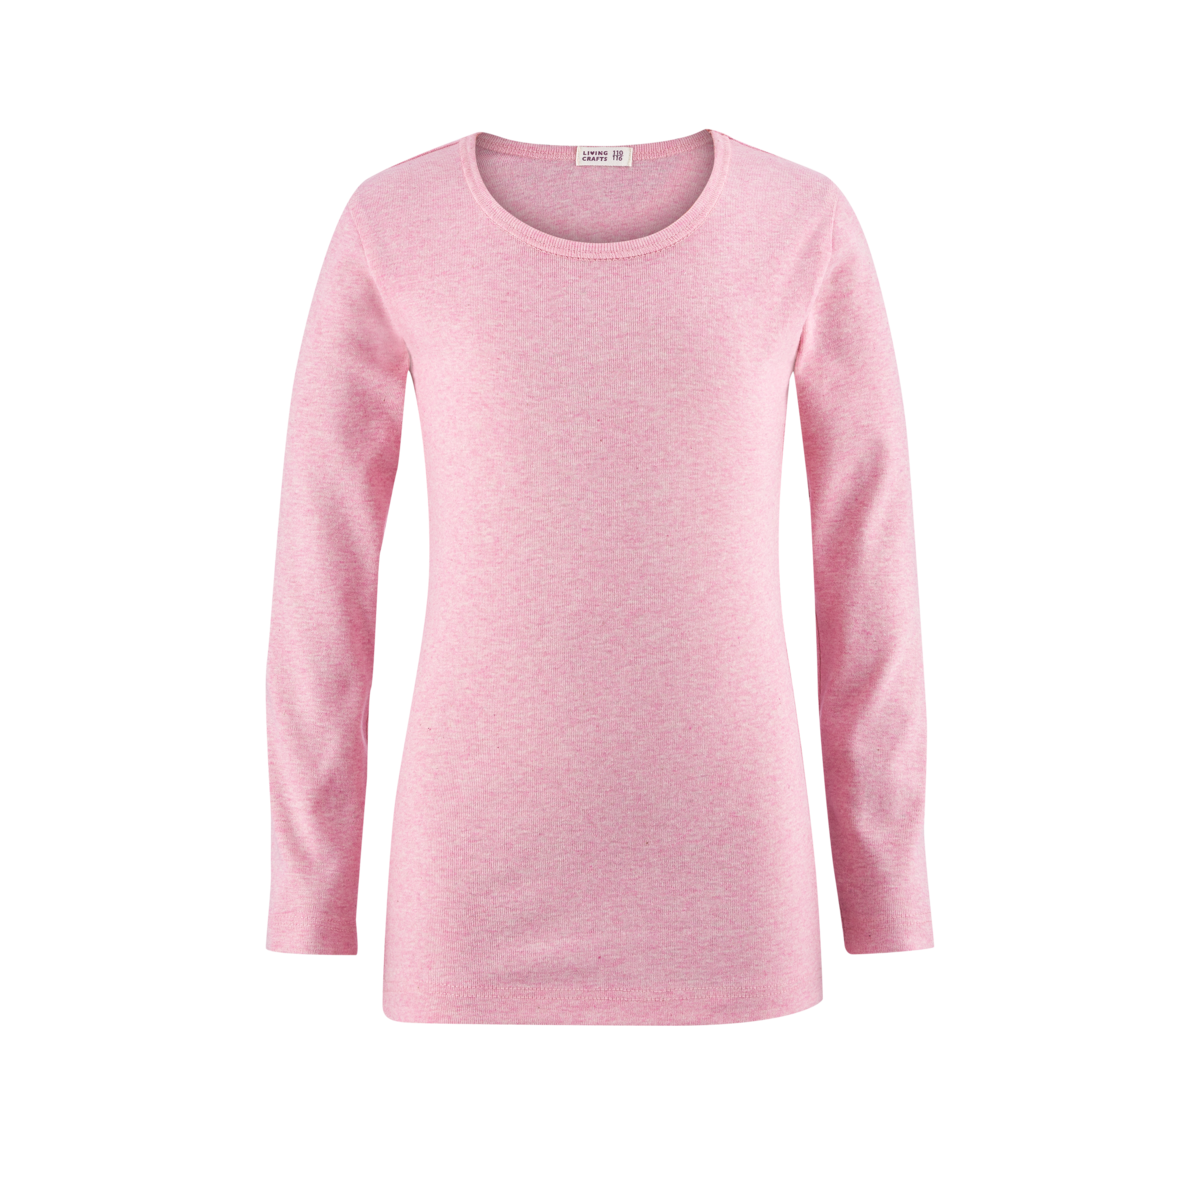 Pink Langarm-Shirt, HORSE